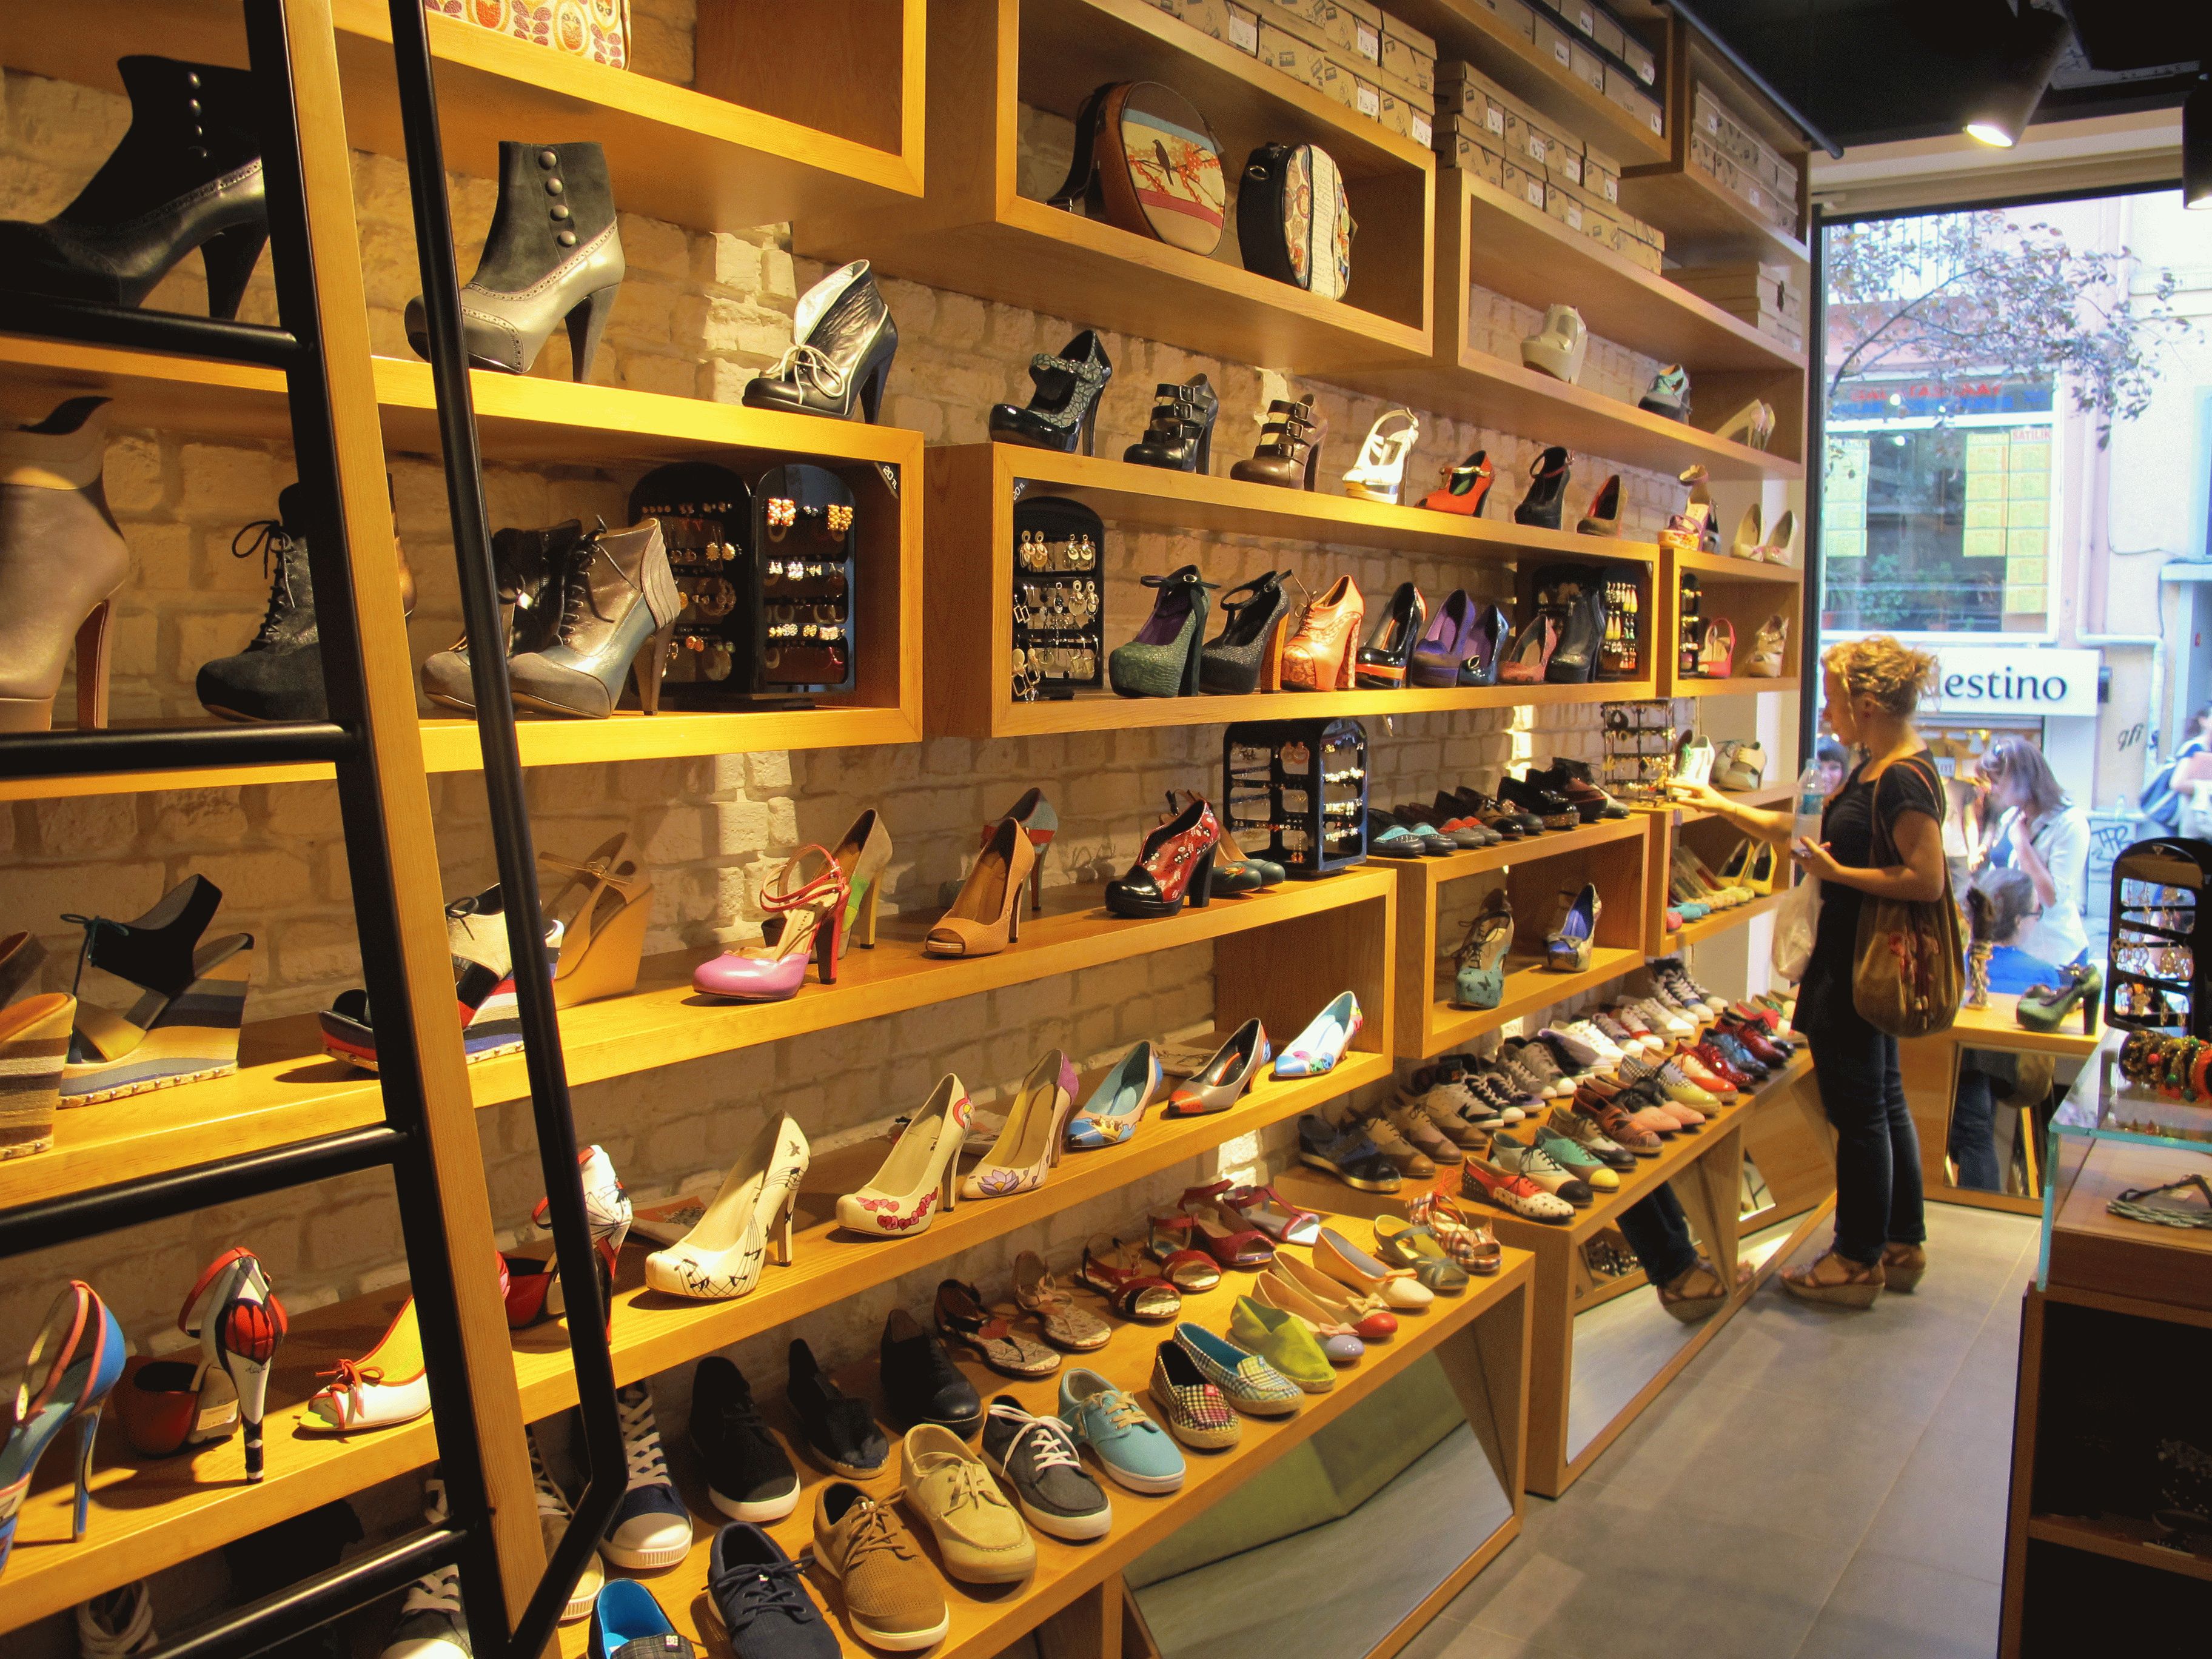 Саратов обувь каталог магазины. Магазин обуви. Обувные товары. Красивый магазин обуви. Магазин обуви фото.